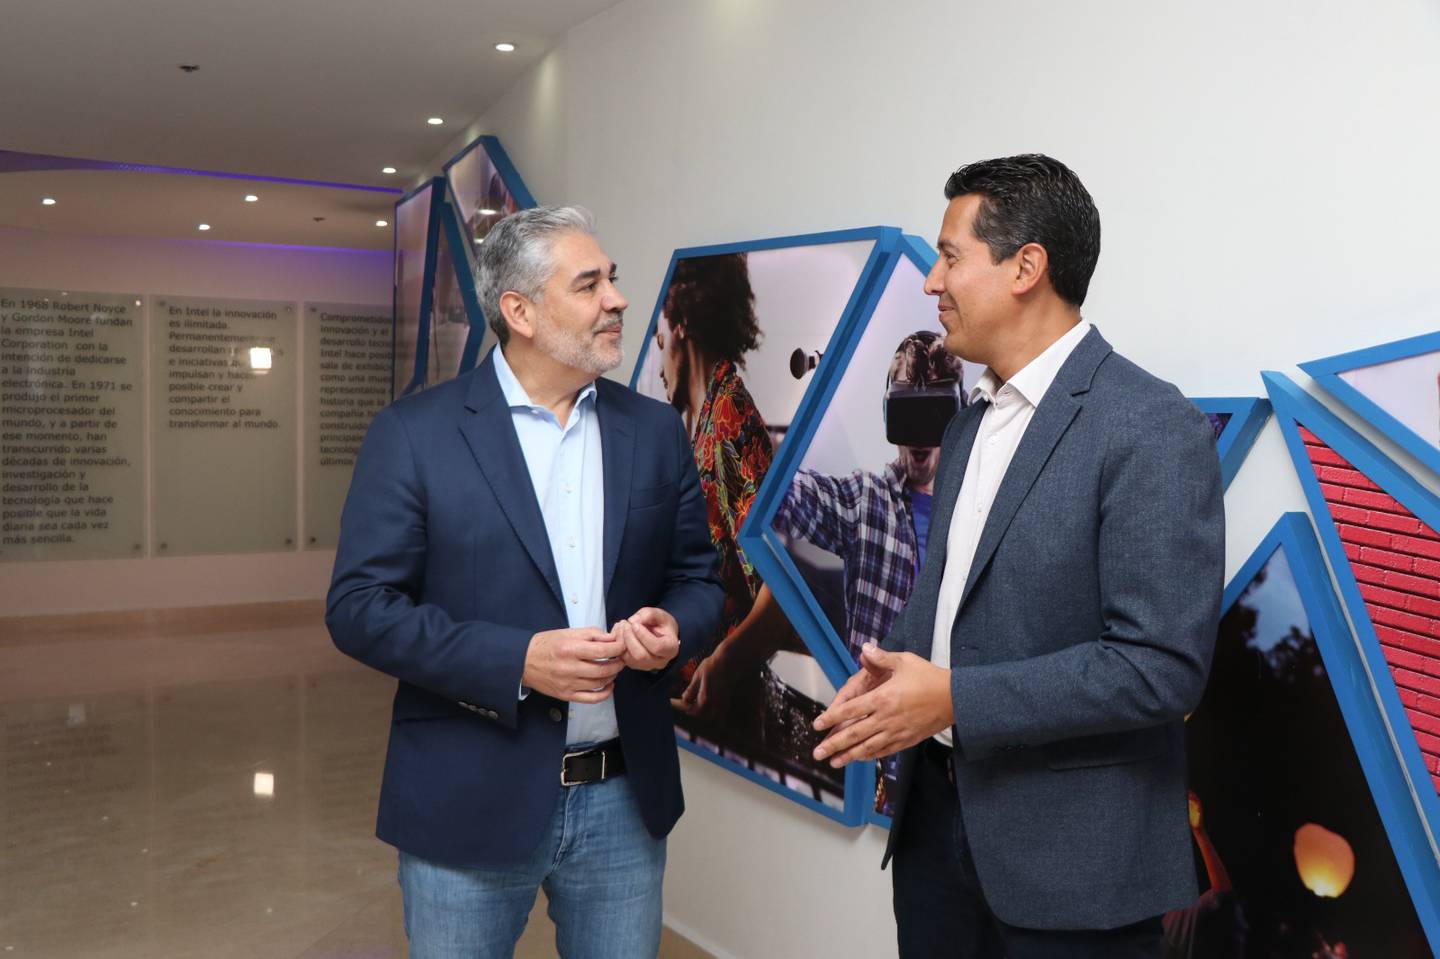 Santiago Cardona, CEO de Intel México IA tiene el poder de revolucionar al mundo